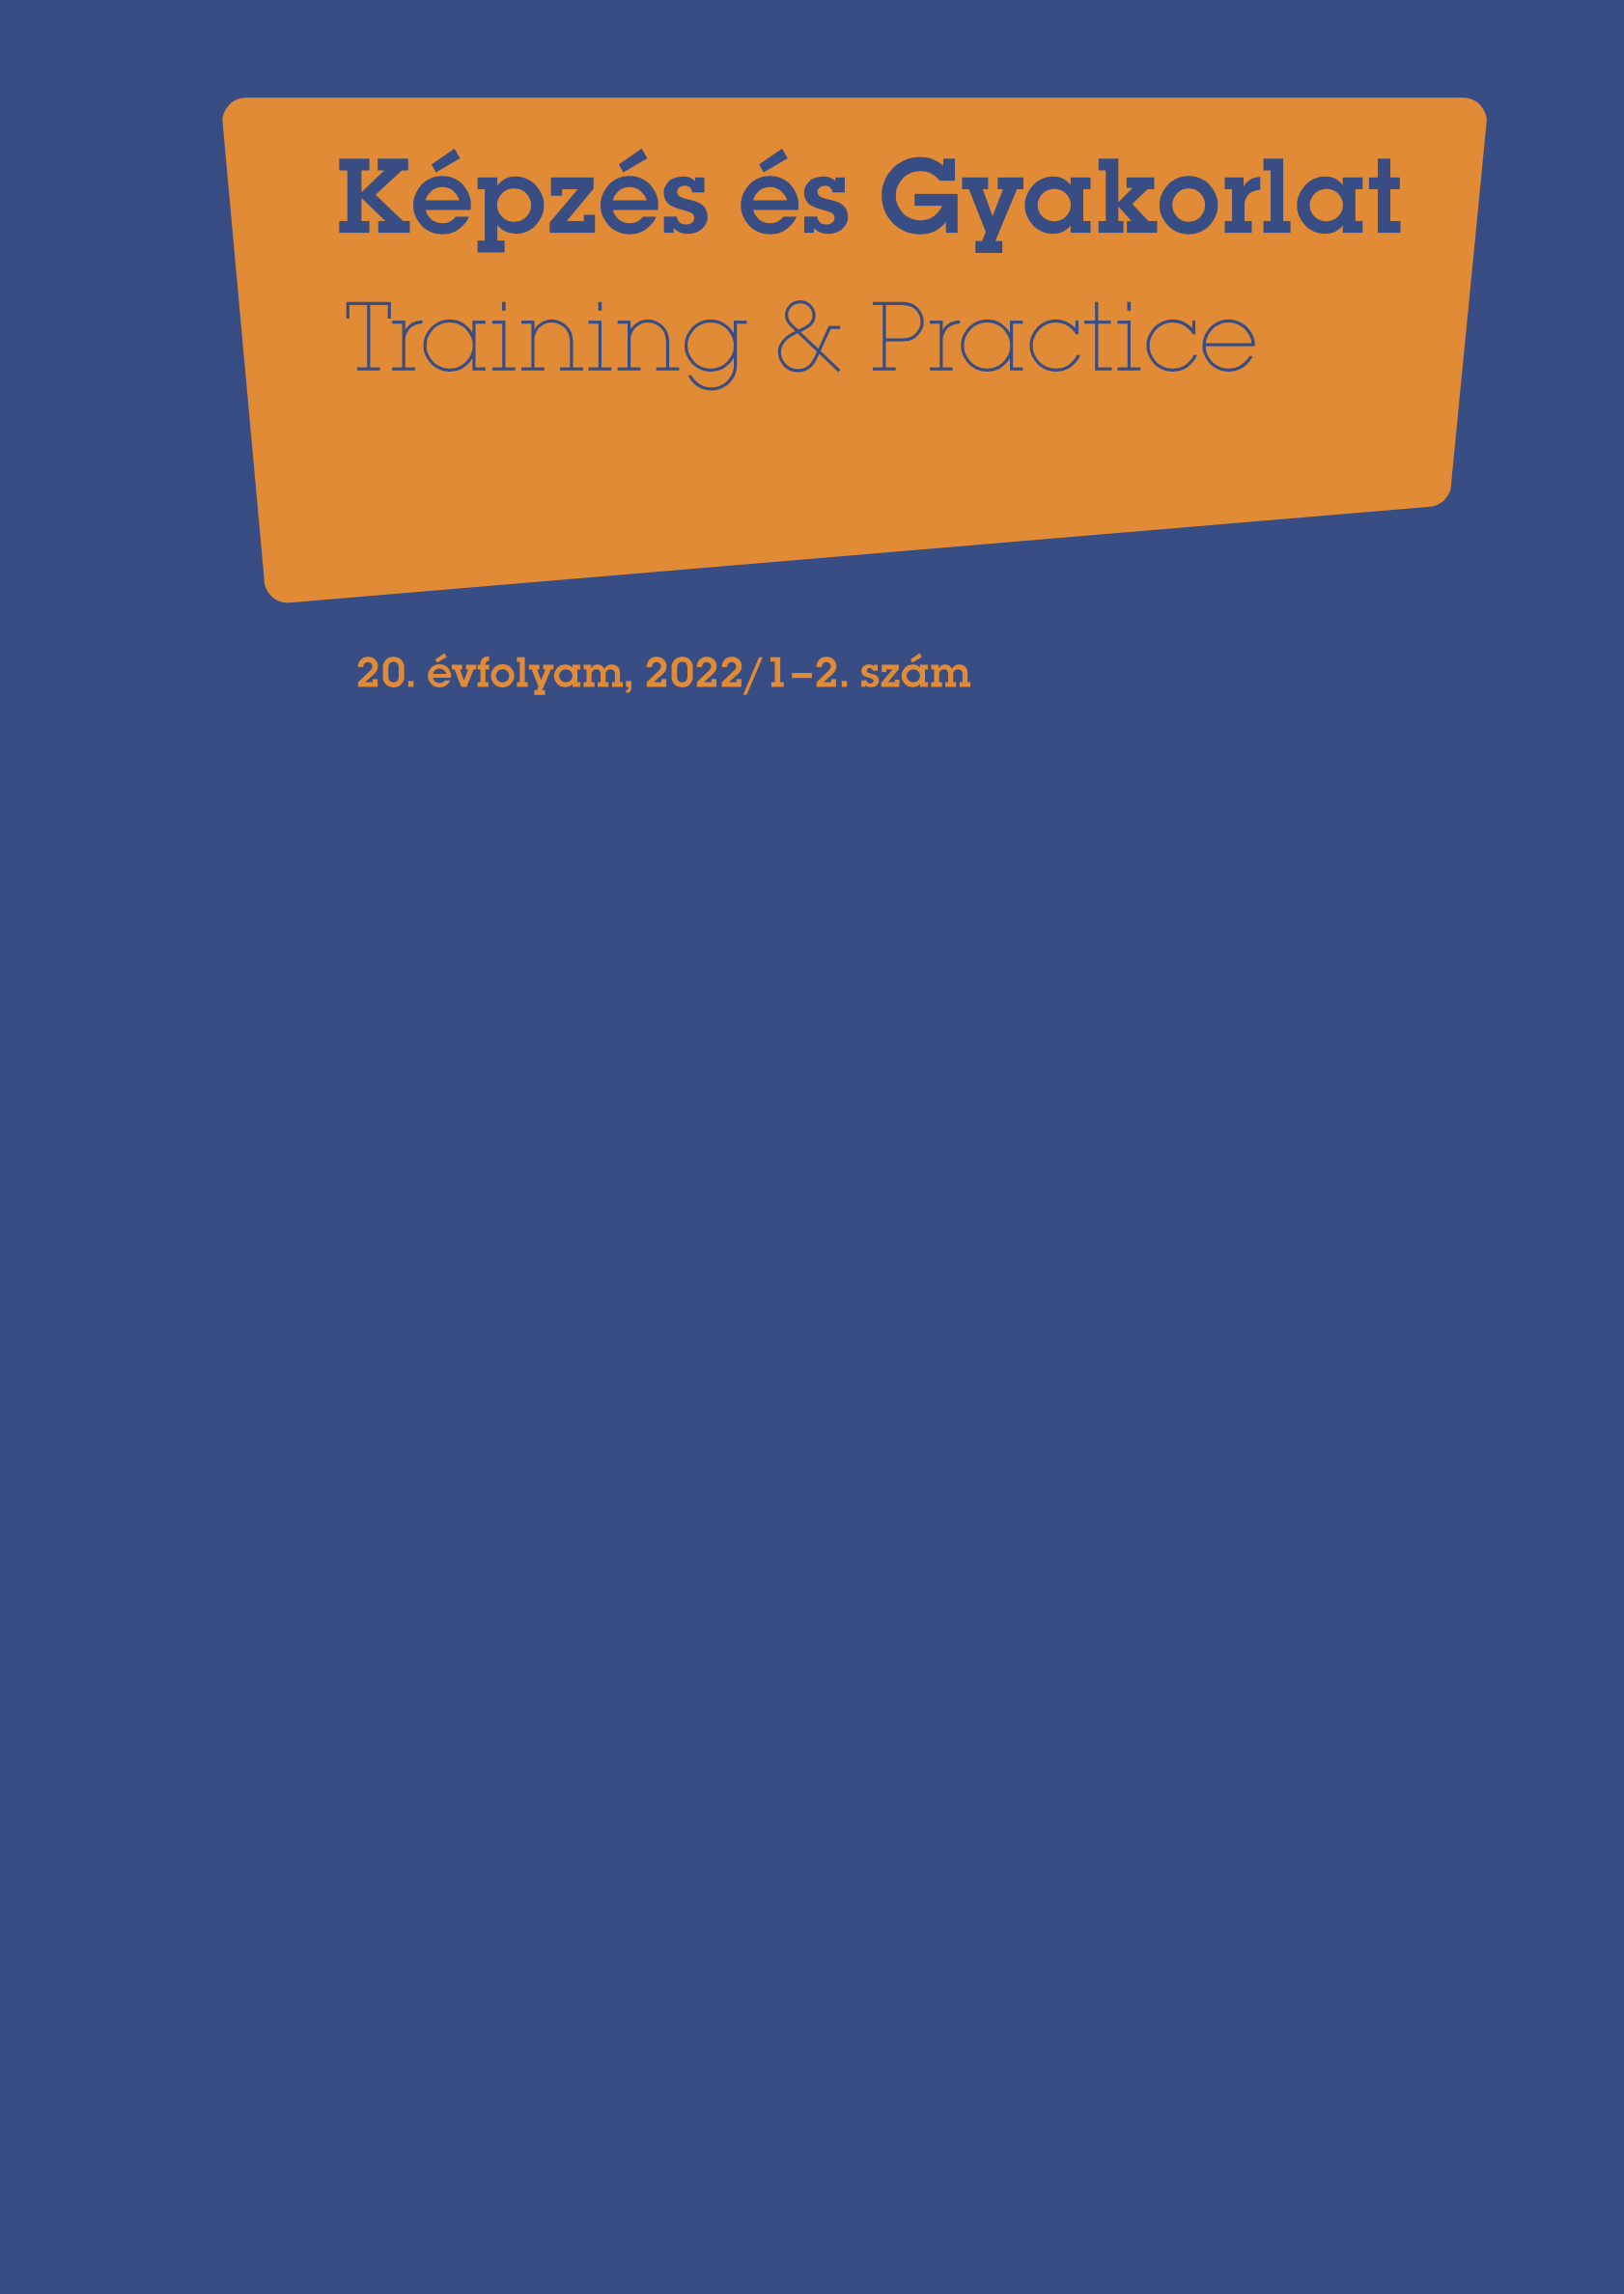 					View Évf. 20 szám 1-2 (2022): Képzés és Gyakorlat
				